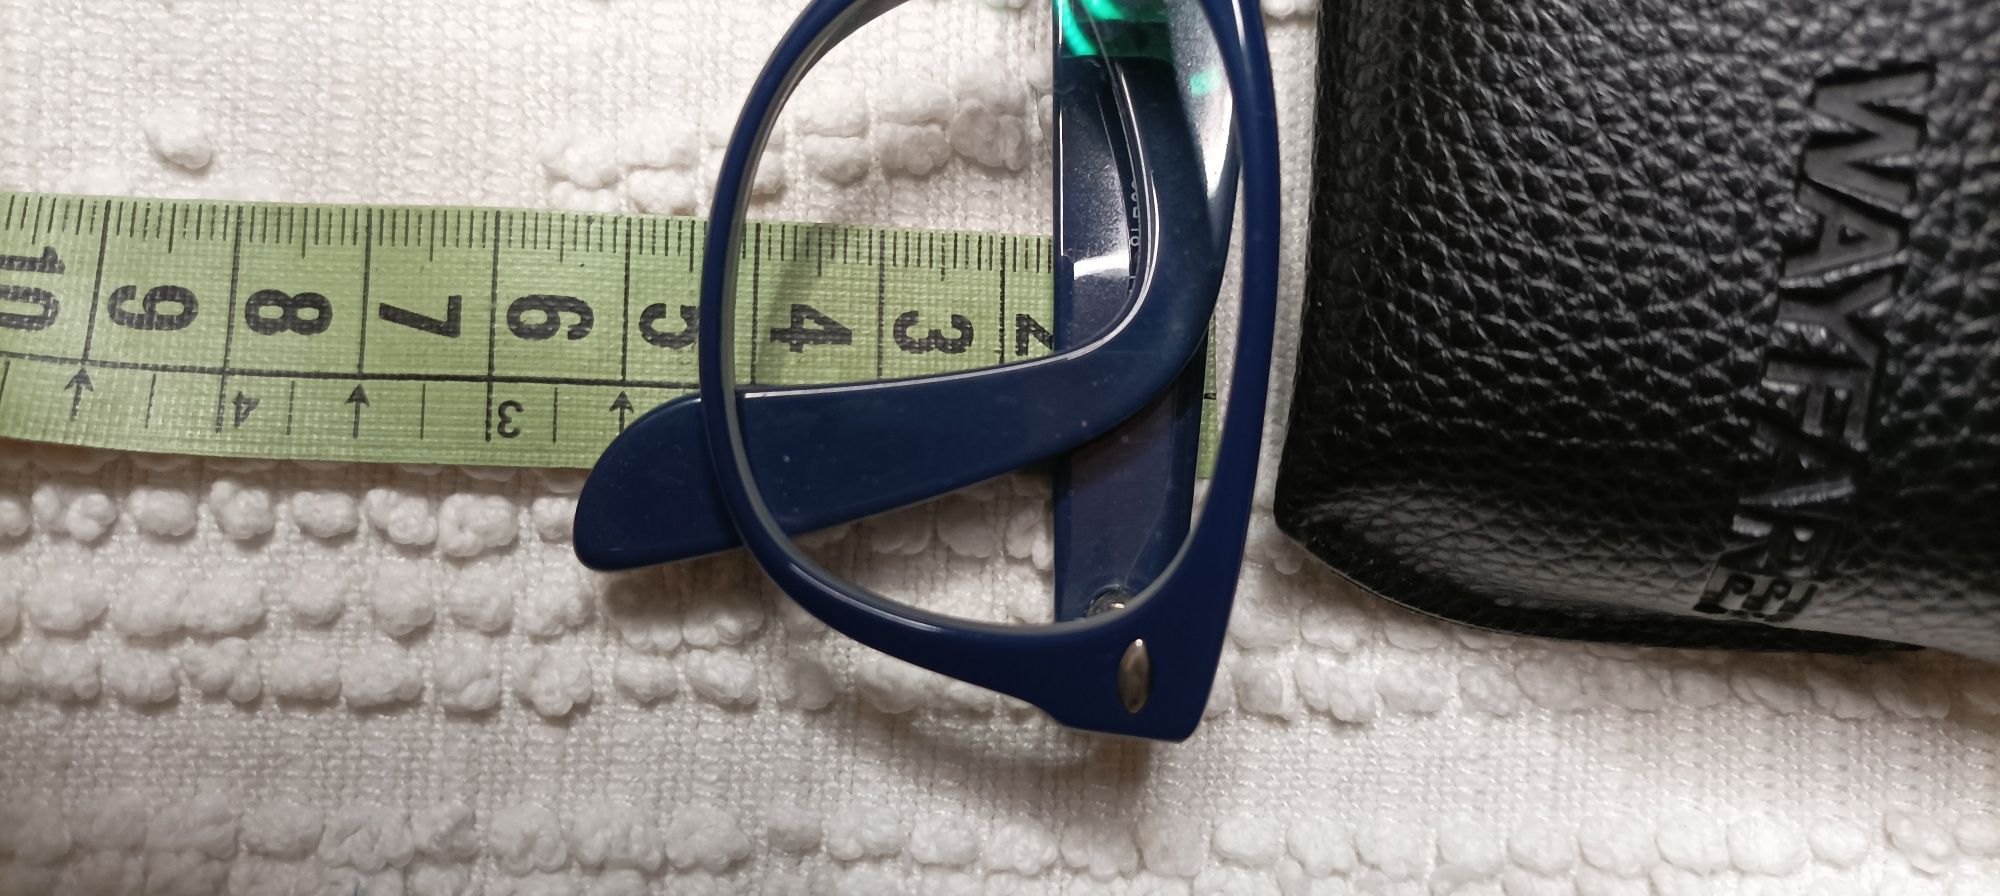 Vendo óculos da marca Ray-Ban, originais, em azul escuro, com bolsa da